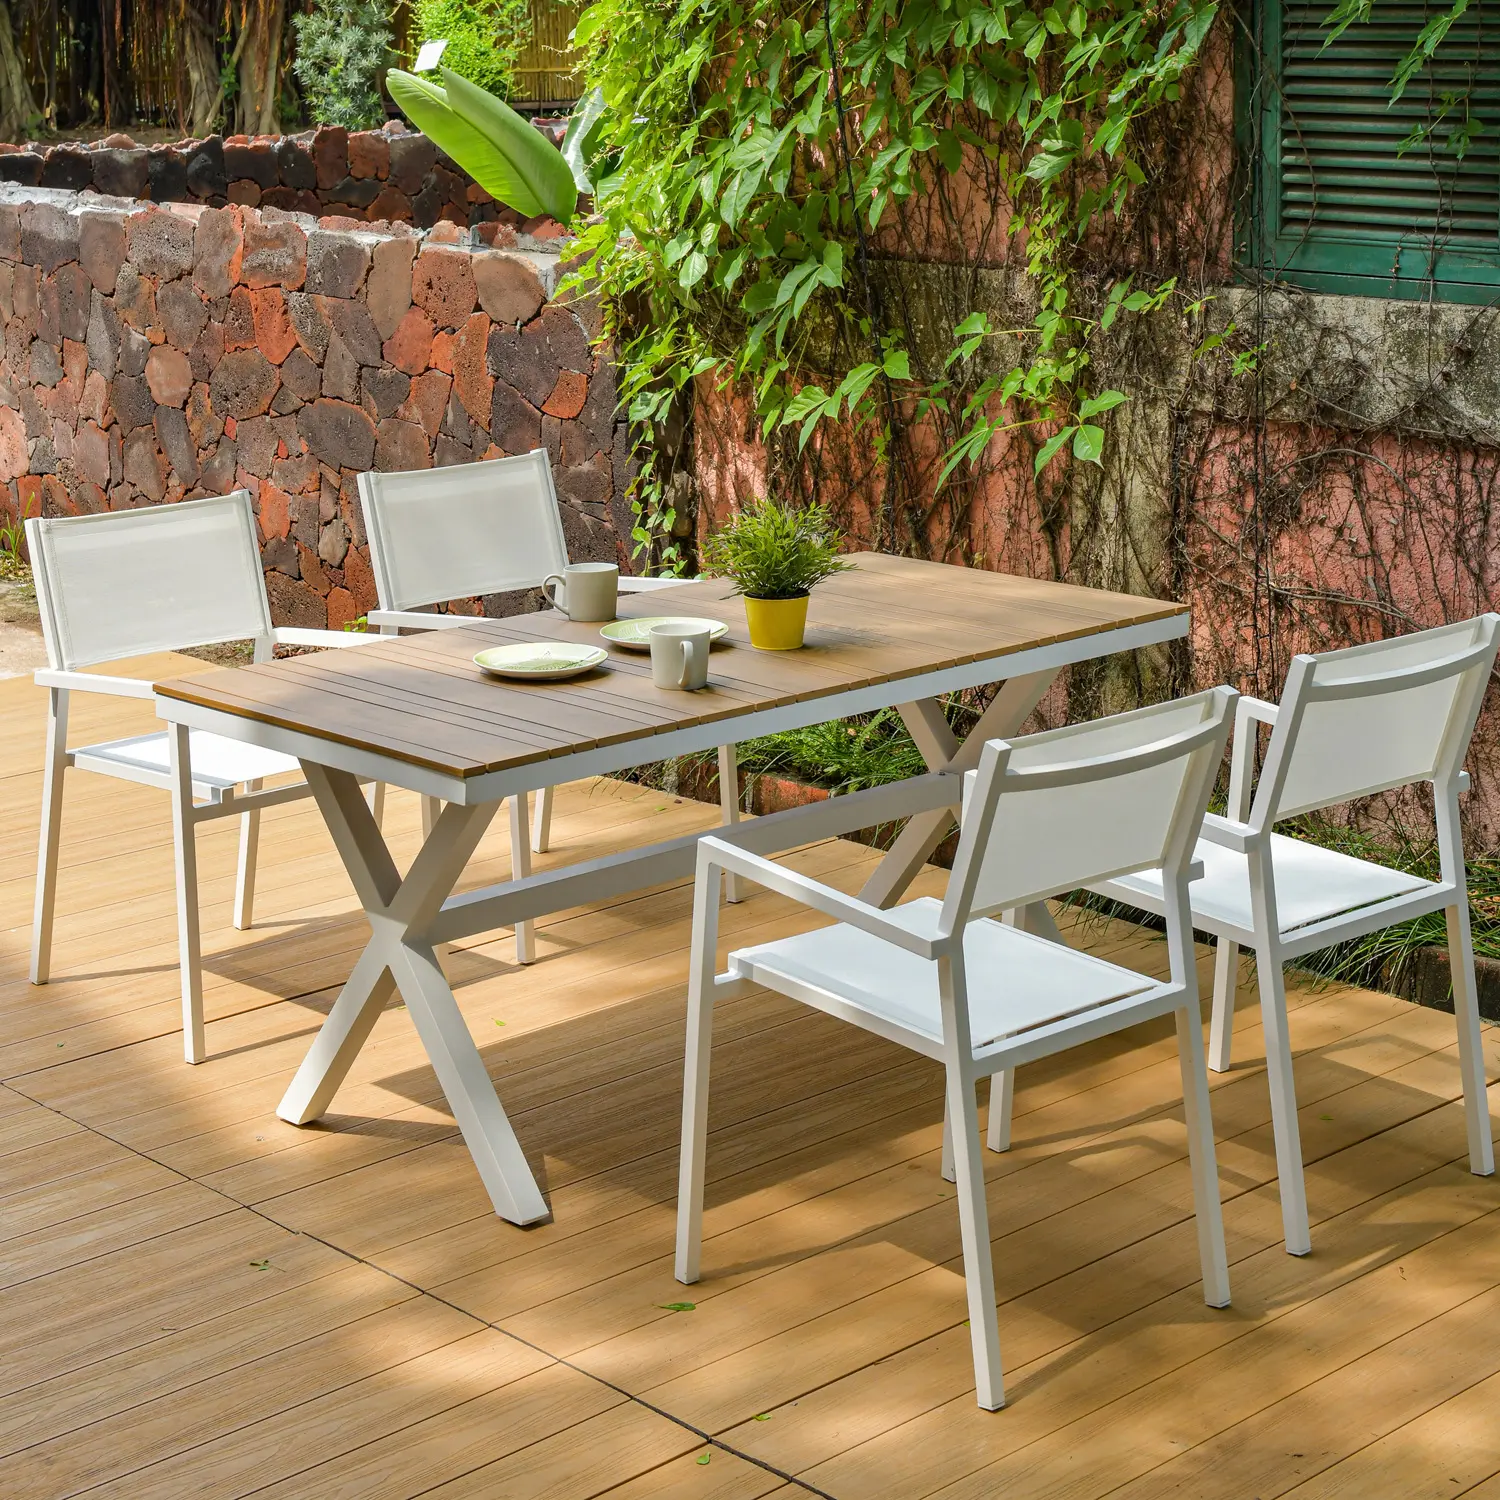 N9033 160cm 180cm 220cm 260cm rettangolo tavolo da pranzo per esterni tavolo da giardino mobili in alluminio set tavolo in legno di teak